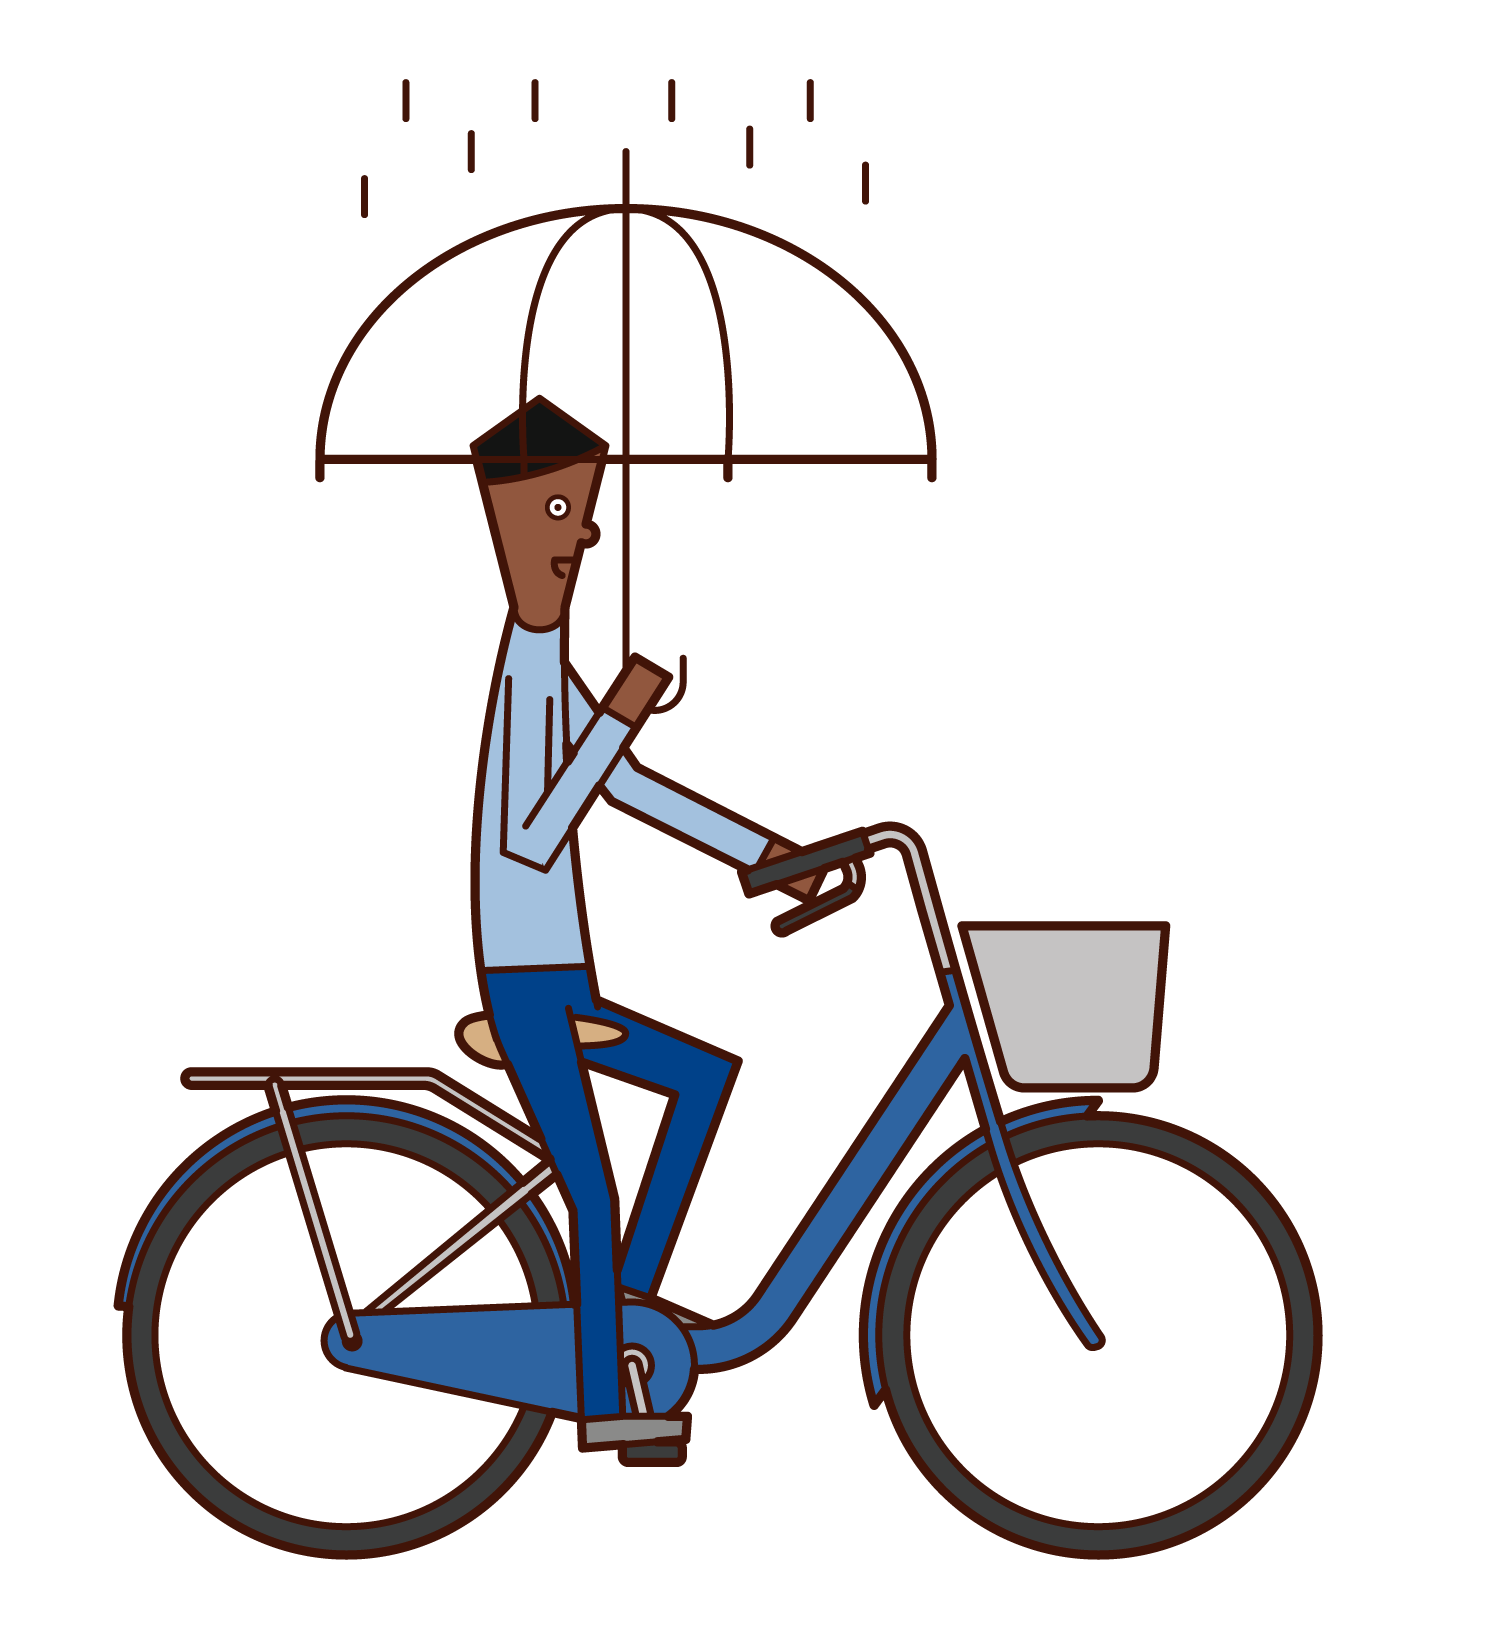 騎自行車的人(男性)的插圖,同時拿著雨傘